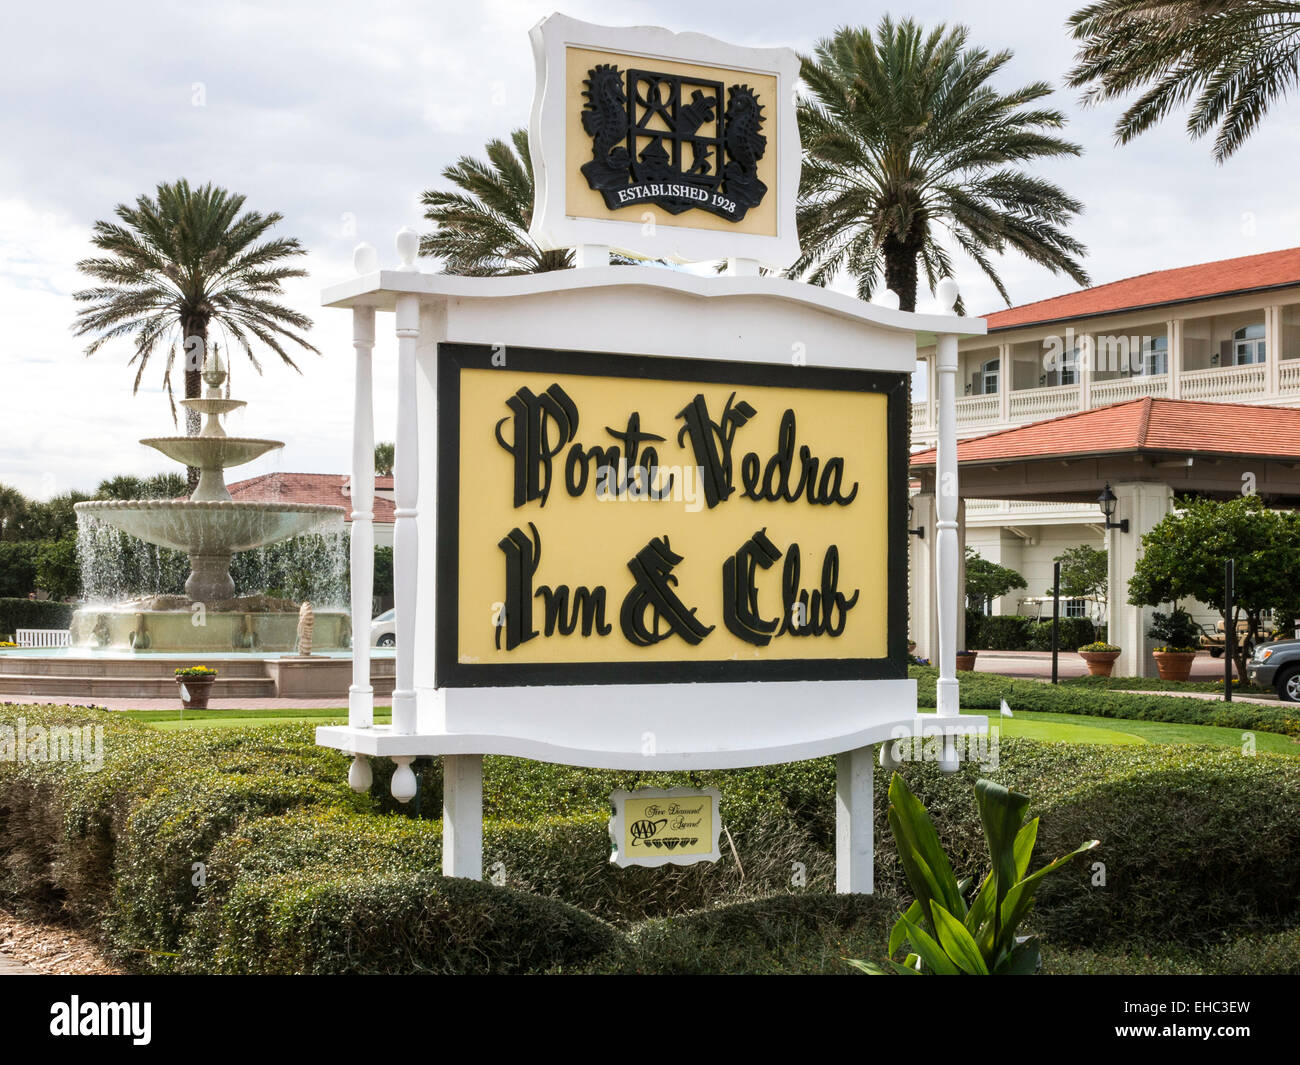 Ponte Vedre inn & Club, Ponte Vedra Beach FL, USA Stock Photo - Alamy